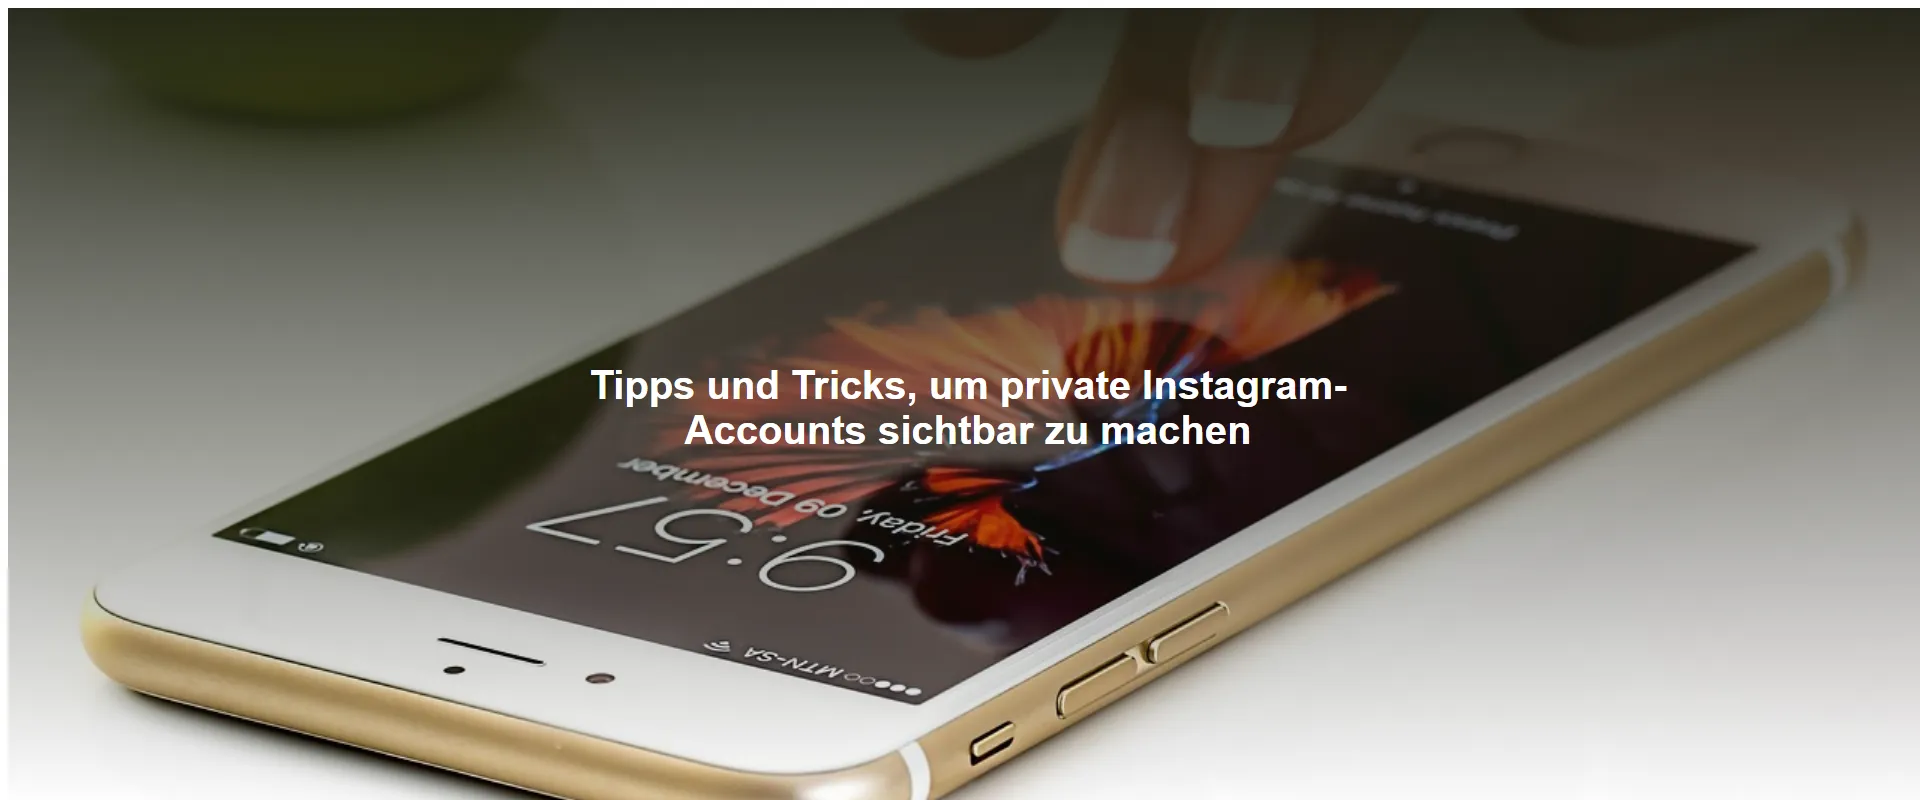 Tipps und Tricks, um private Instagram-Accounts sichtbar zu machen